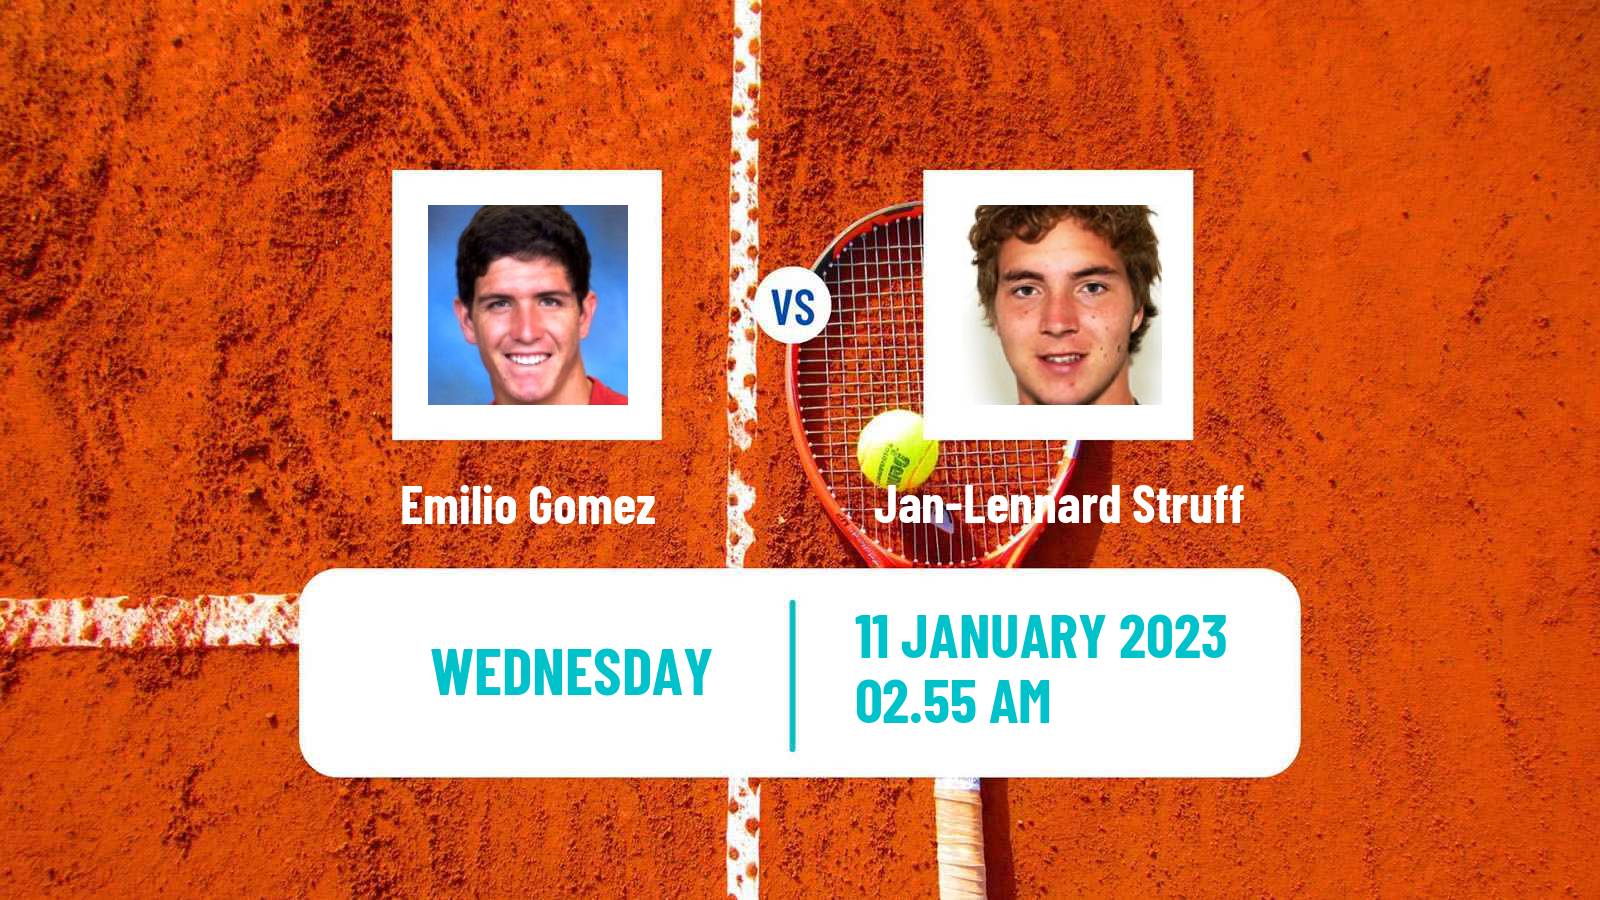 Tennis ATP Australian Open Emilio Gomez - Jan-Lennard Struff